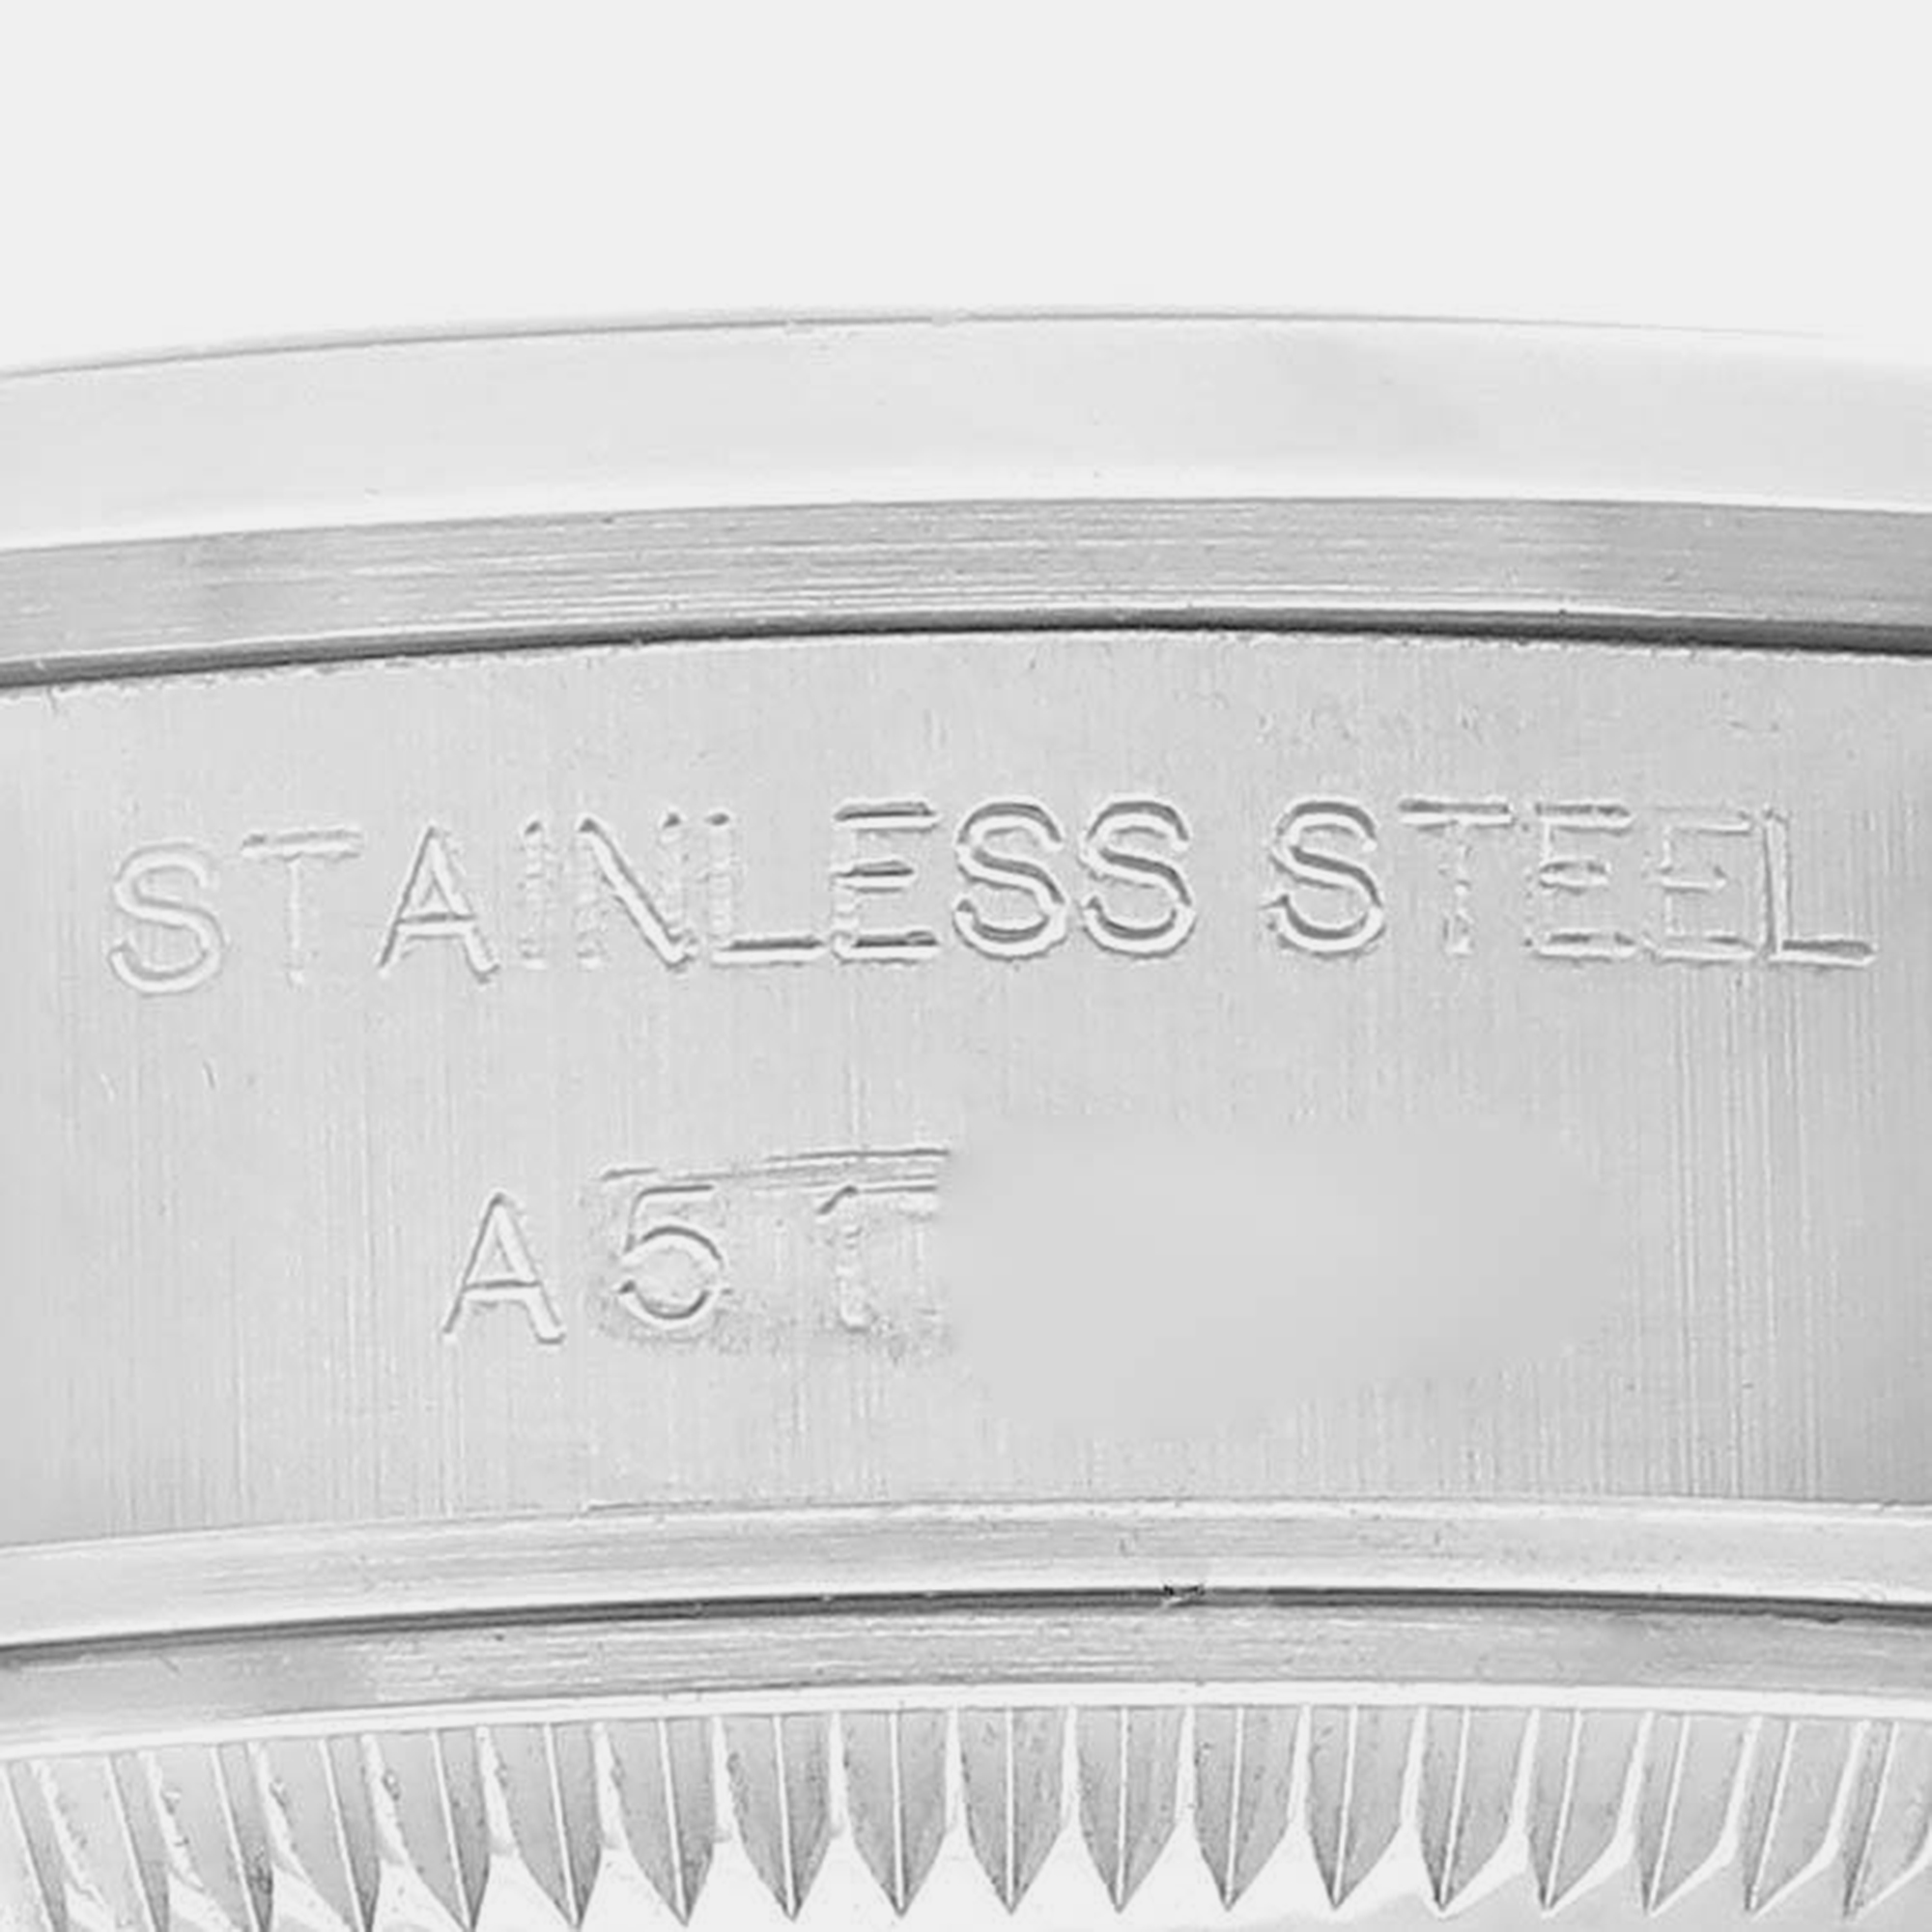 Rolex Date 26 White Dial Smooth Bezel Steel Ladies Watch 79160 26 Mm